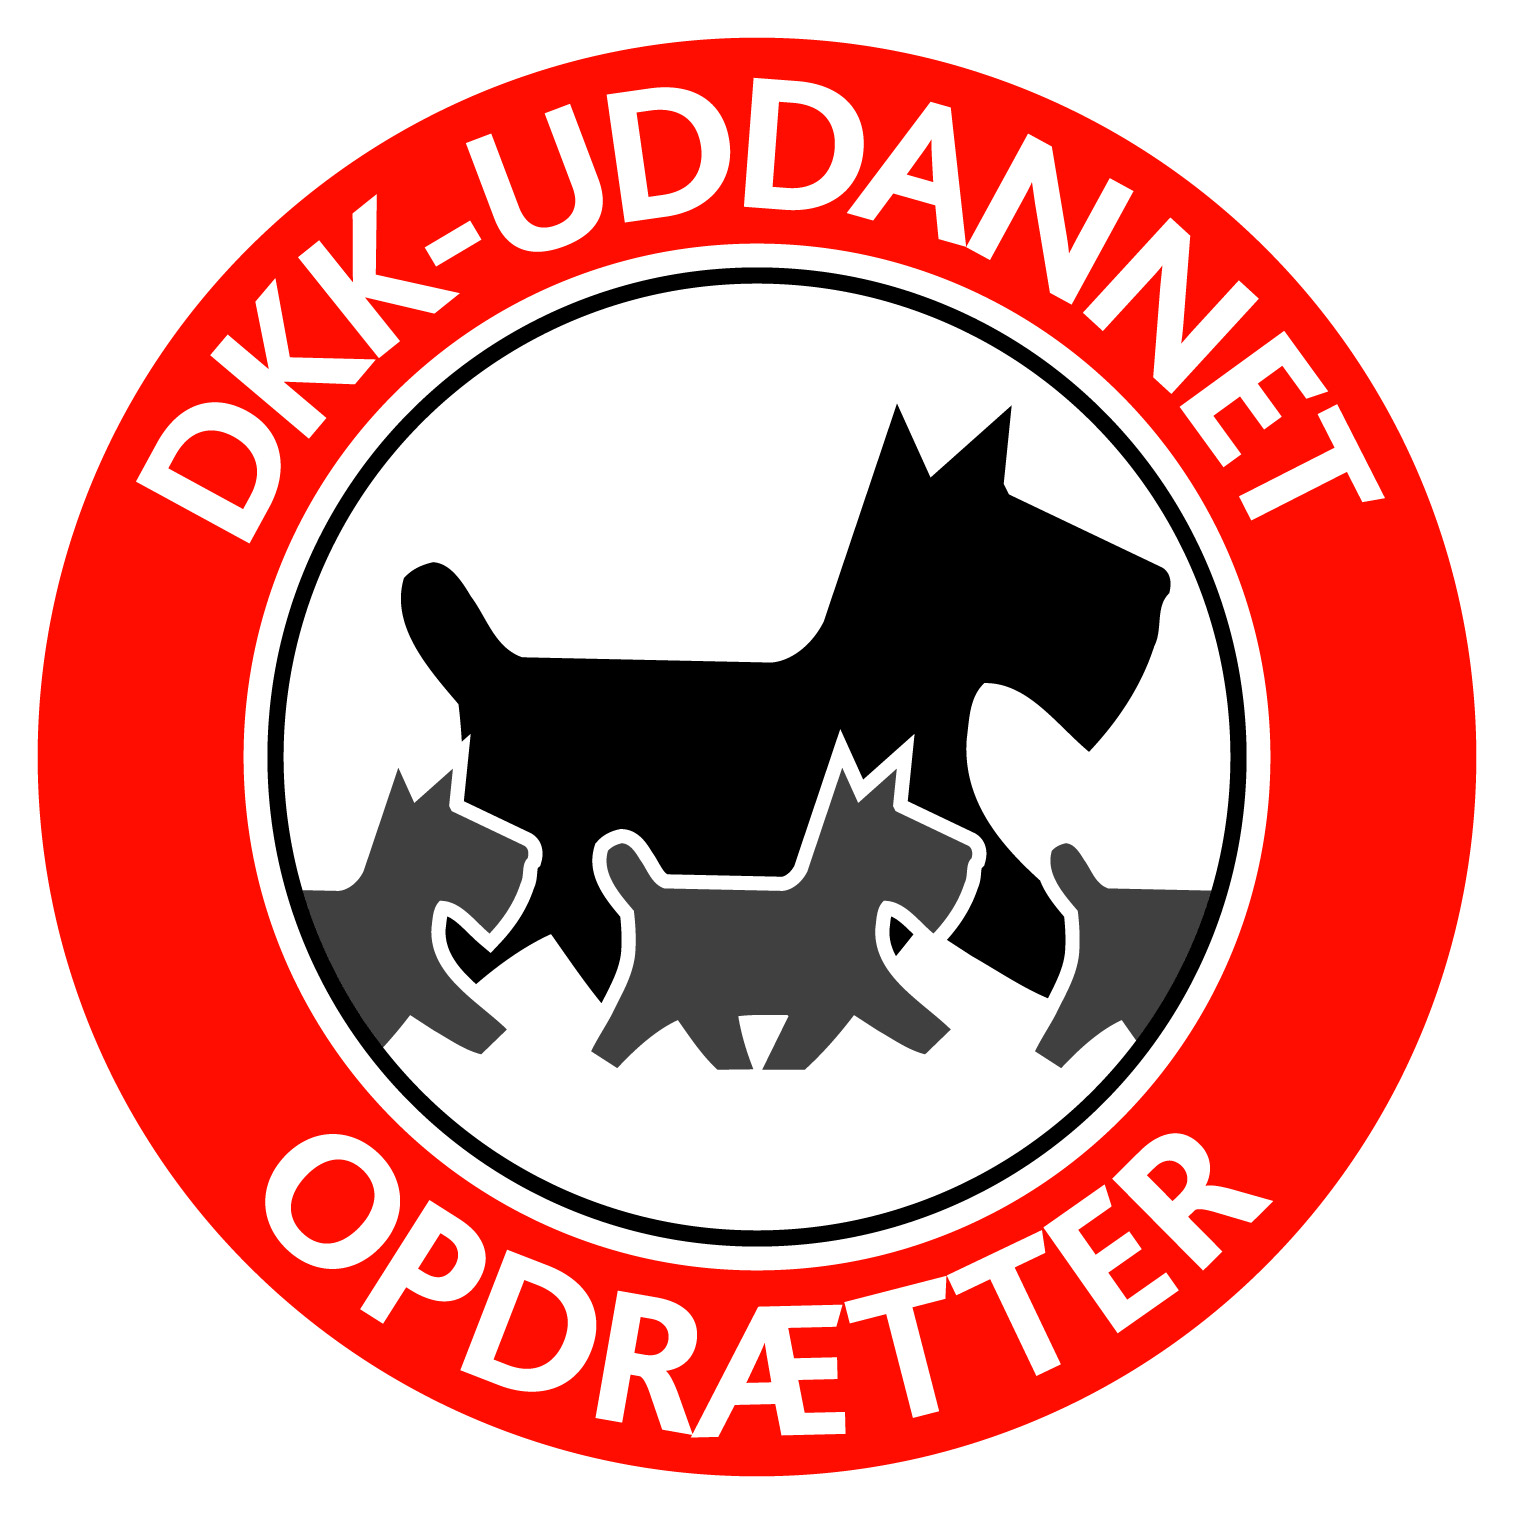 DKK uddannet opdraetter-logo